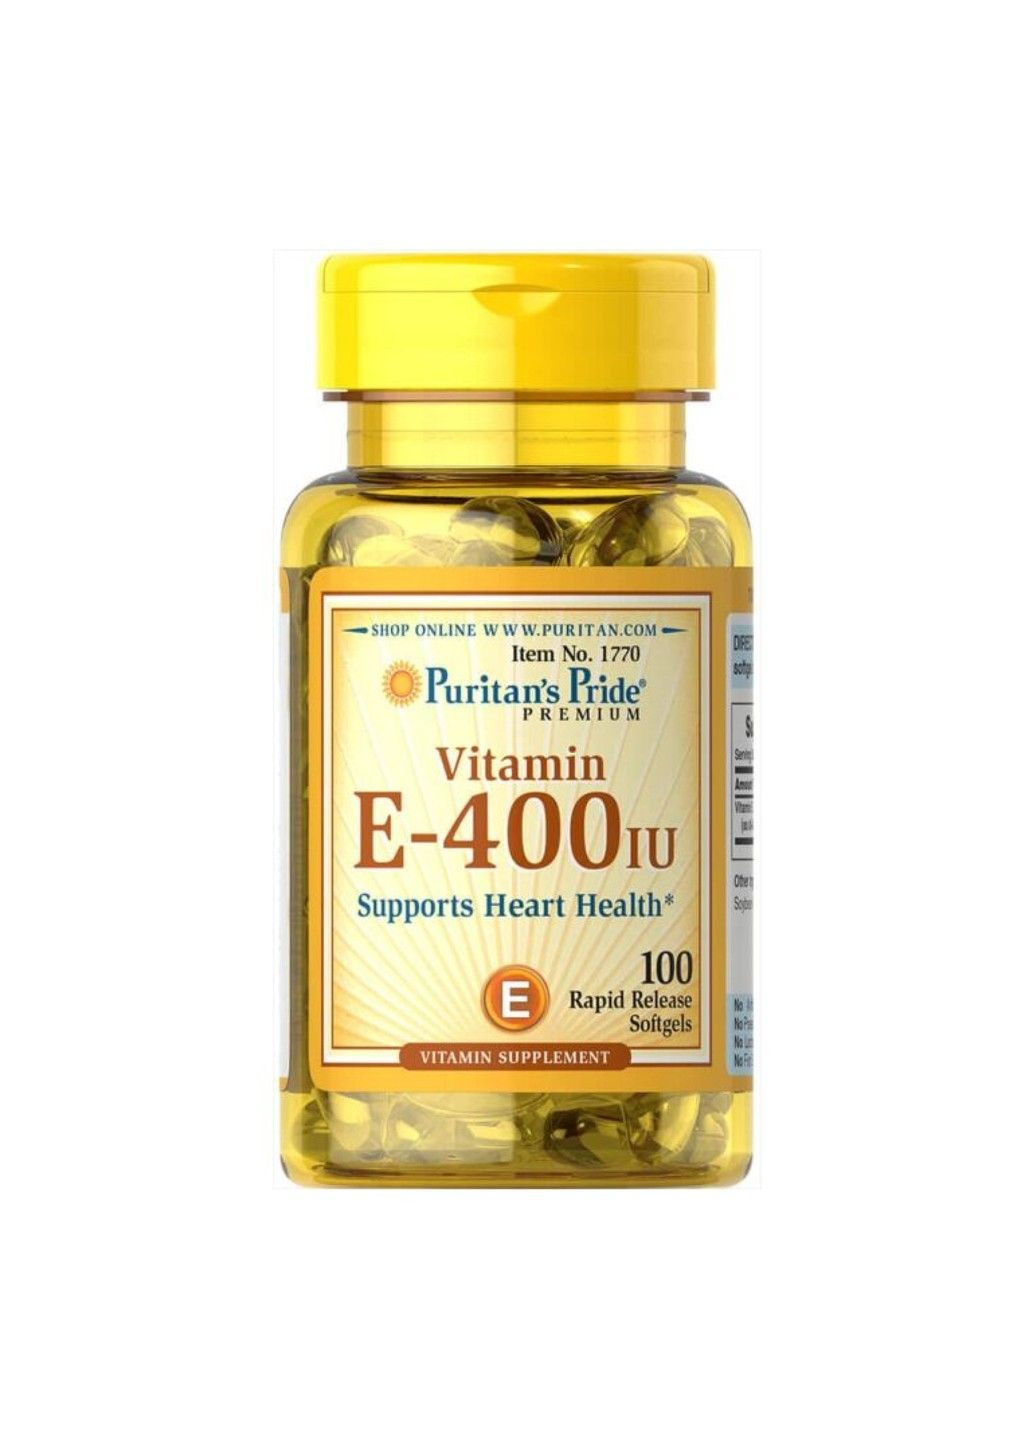 Витамин Е для Поддержки Здоровье Сердца Vitamin E-400 IU - 100 софтгель Puritans Pride (293516658)